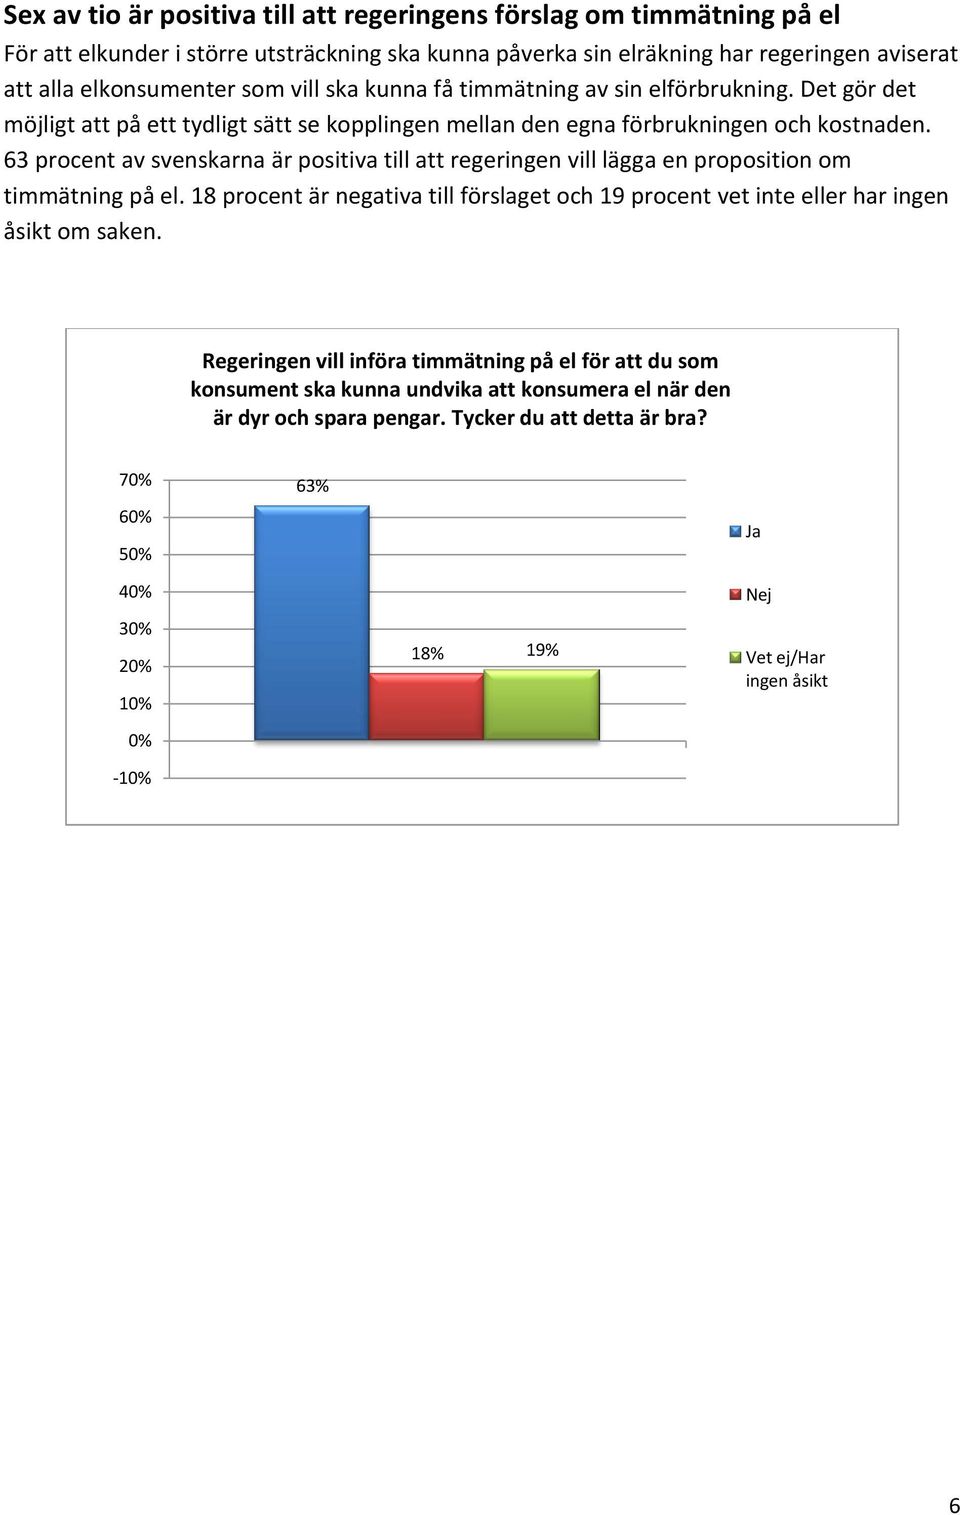 63 procent av svenskarna är positiva till att regeringen vill lägga en proposition om timmätning på el.